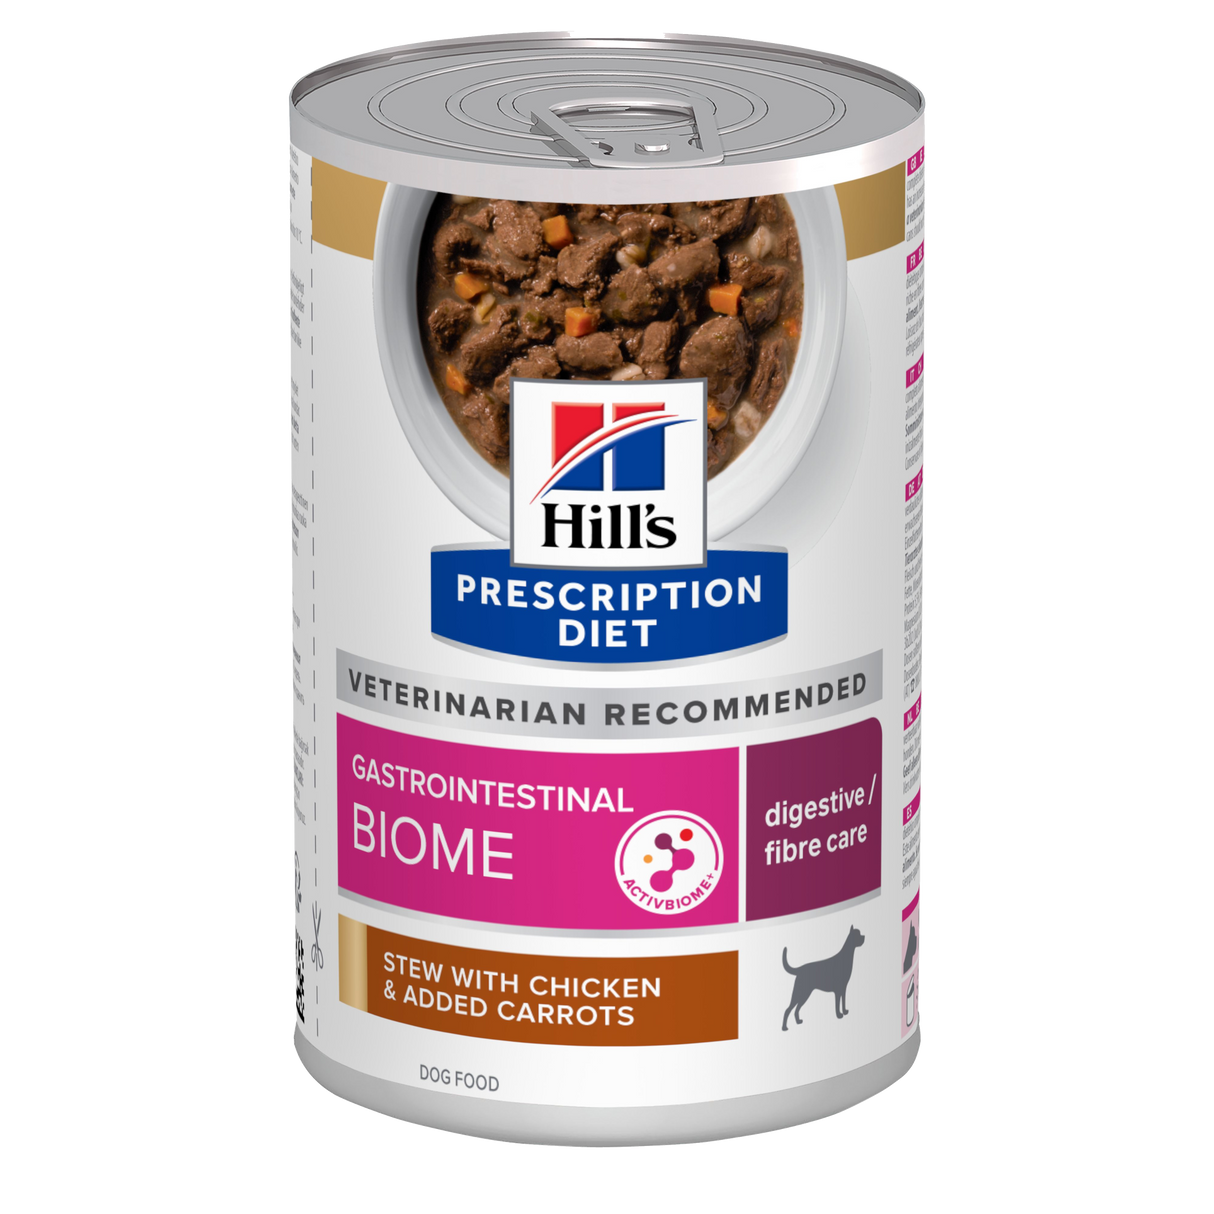 Hill's PRESCRIPTION DIET - Gastrointestinal Biome til hunde, Stew med kylling og grøntsager